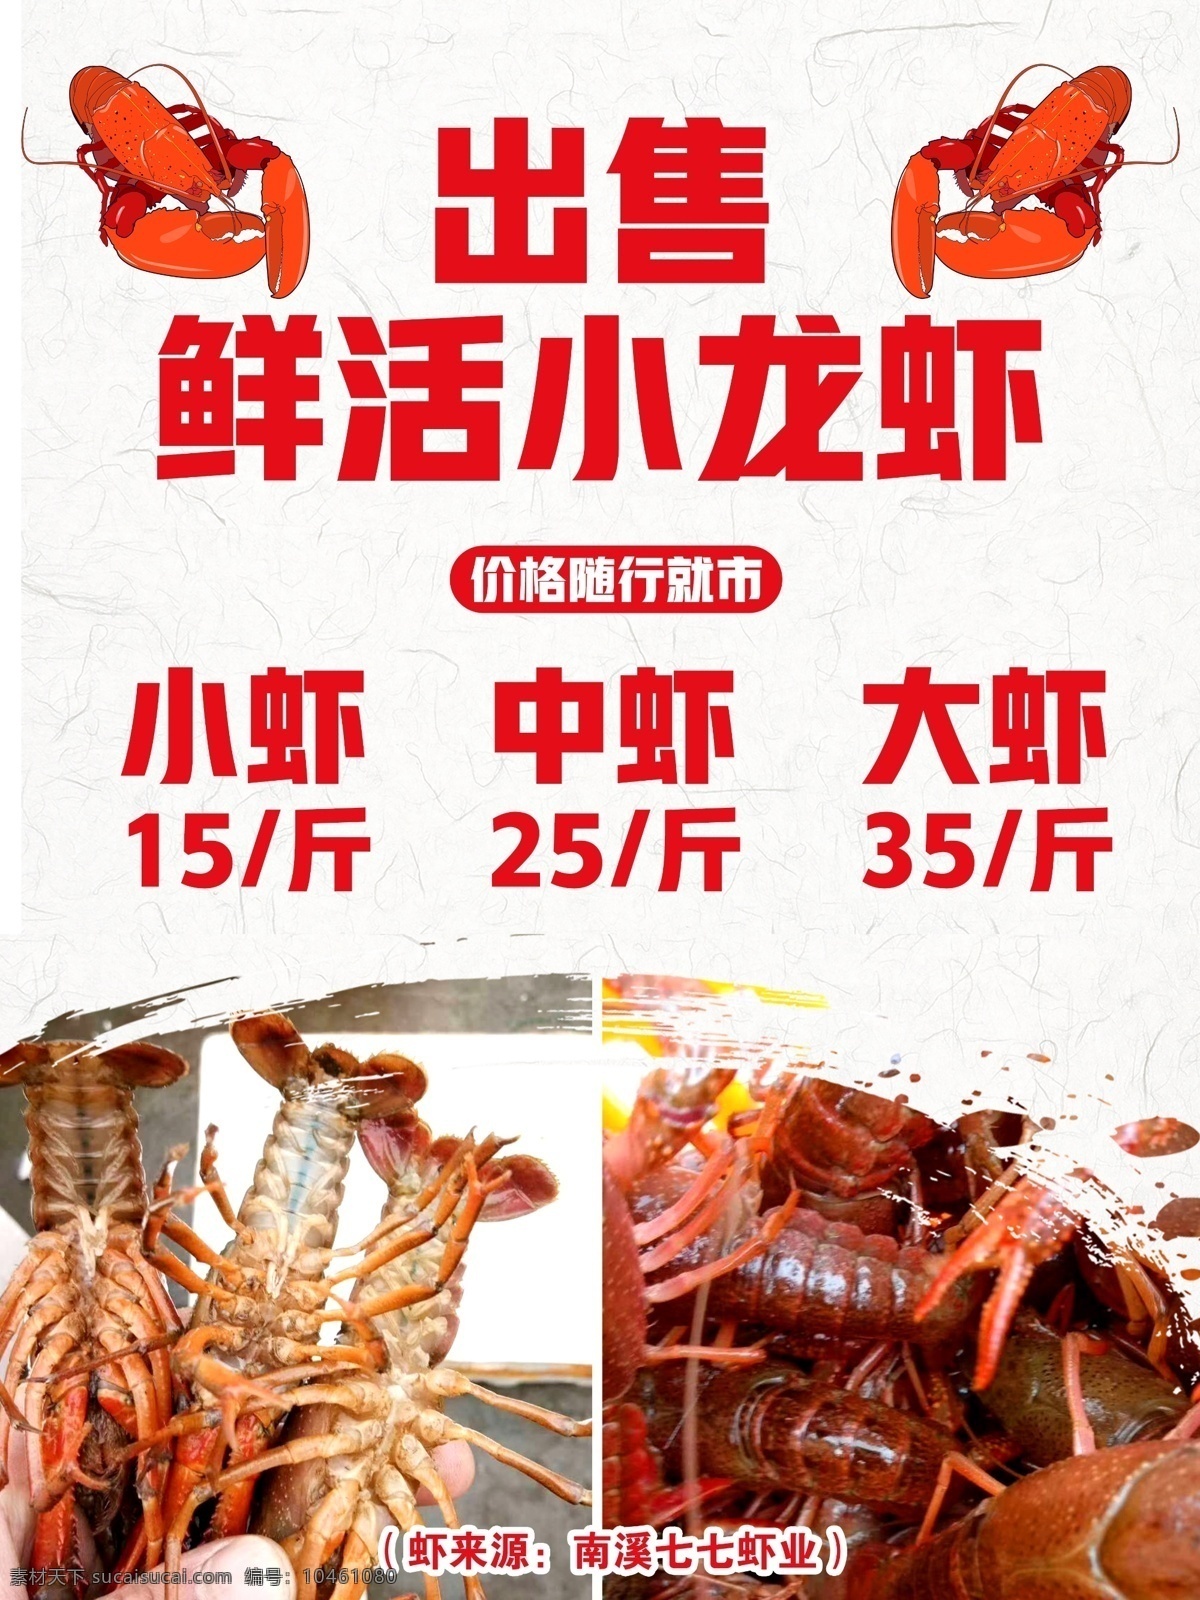 出售 鲜活 小 龙虾 模板 小龙虾 创意海报